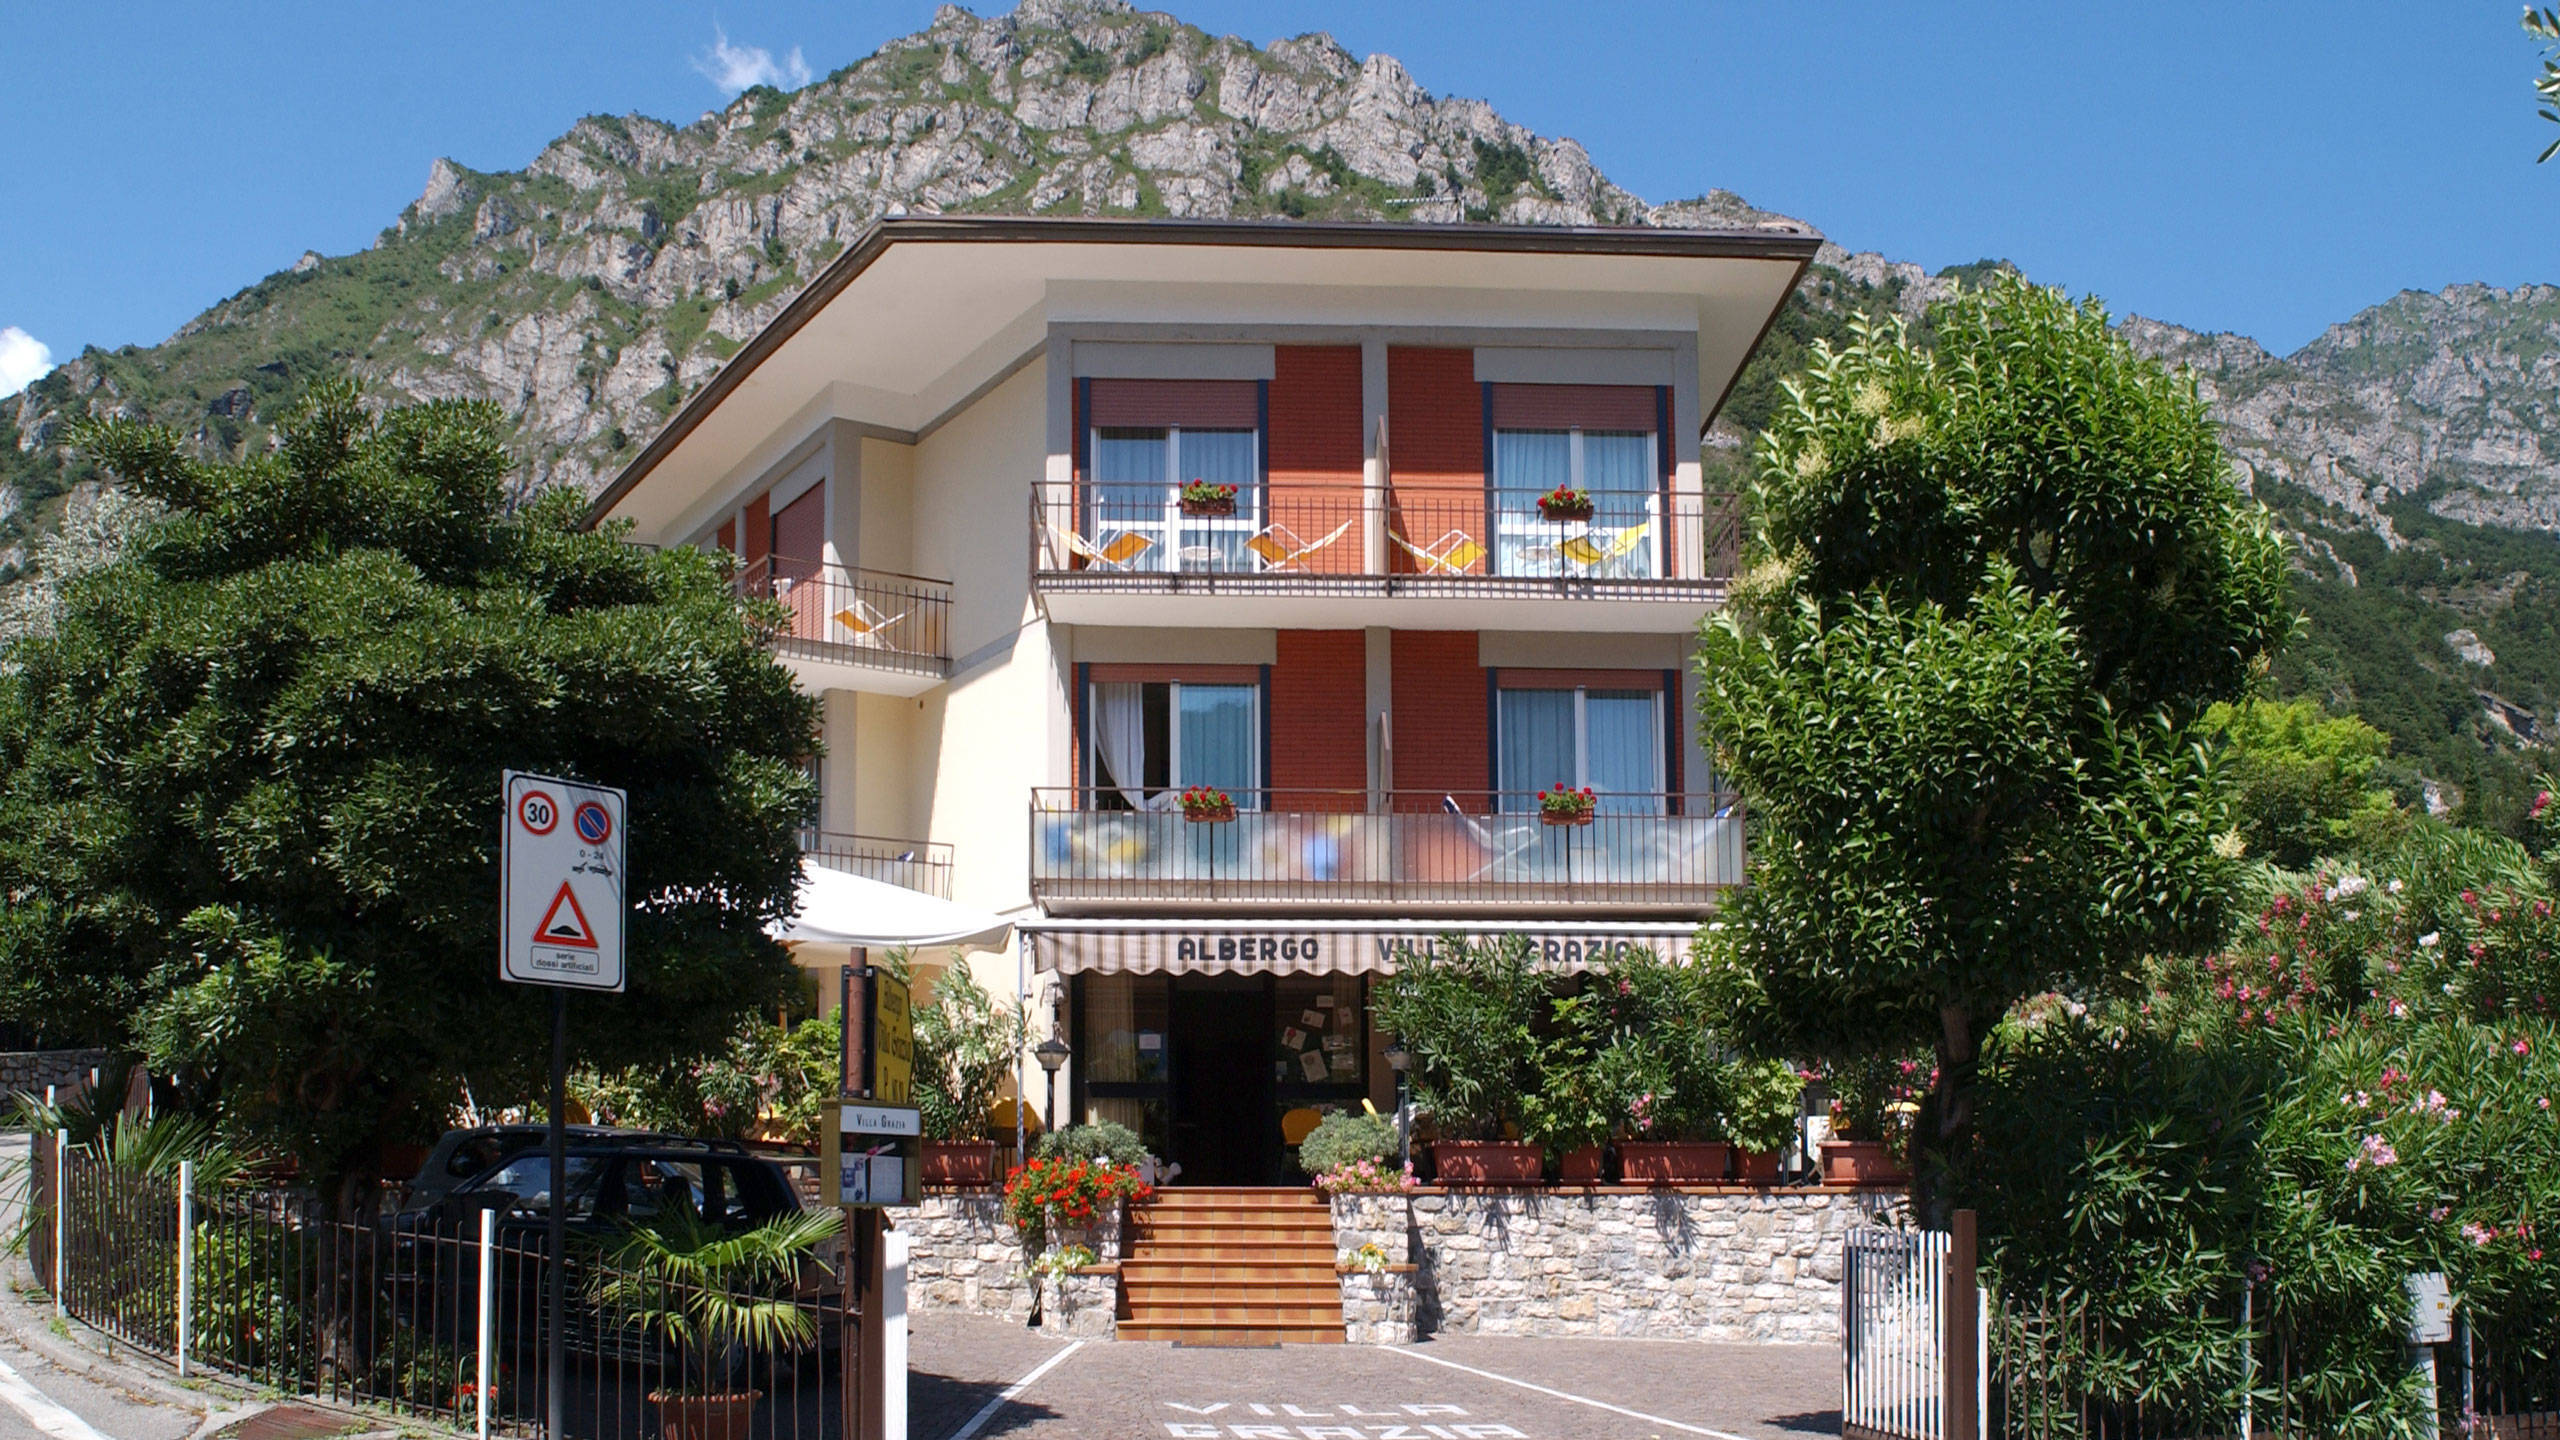 Hotel Villa Grazia - Hotel 2 stelle economy a Limone sul Garda - Vacanza Lago di Garda - Brescia - Italia